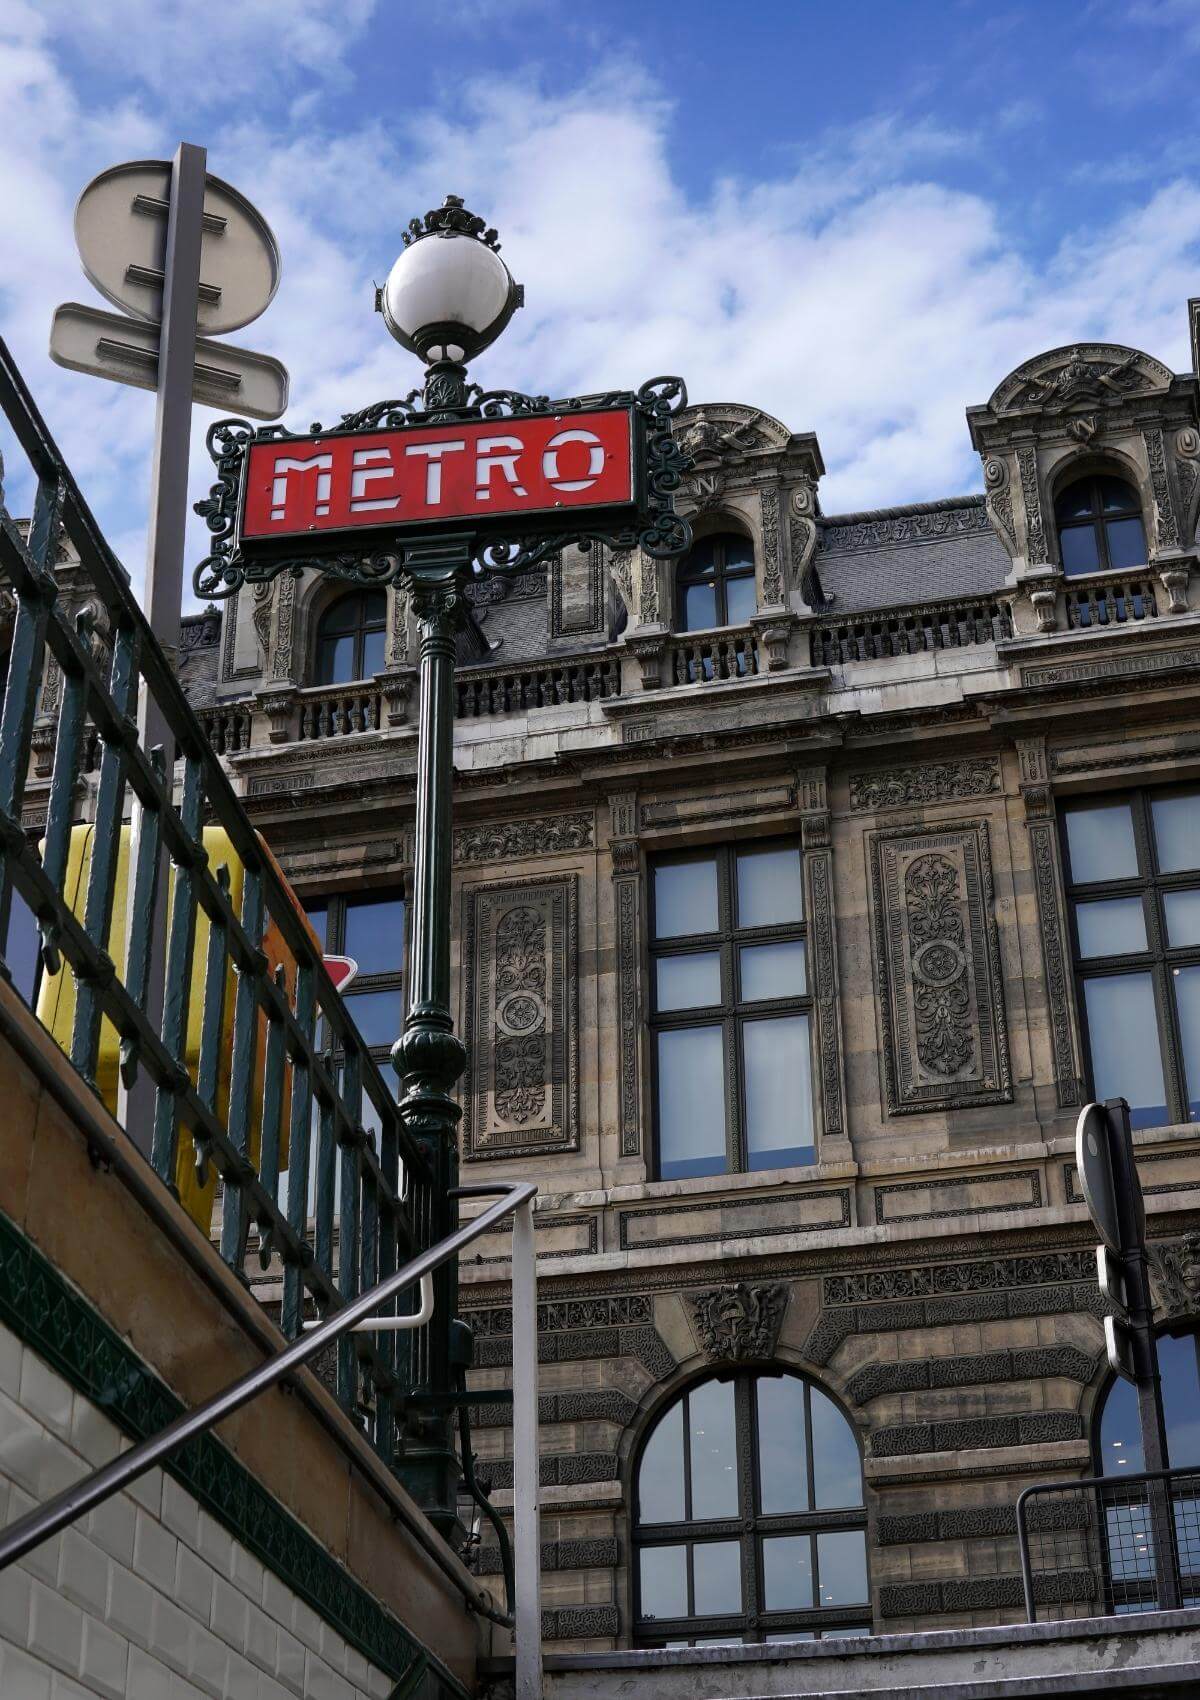 Metro in Paris, France